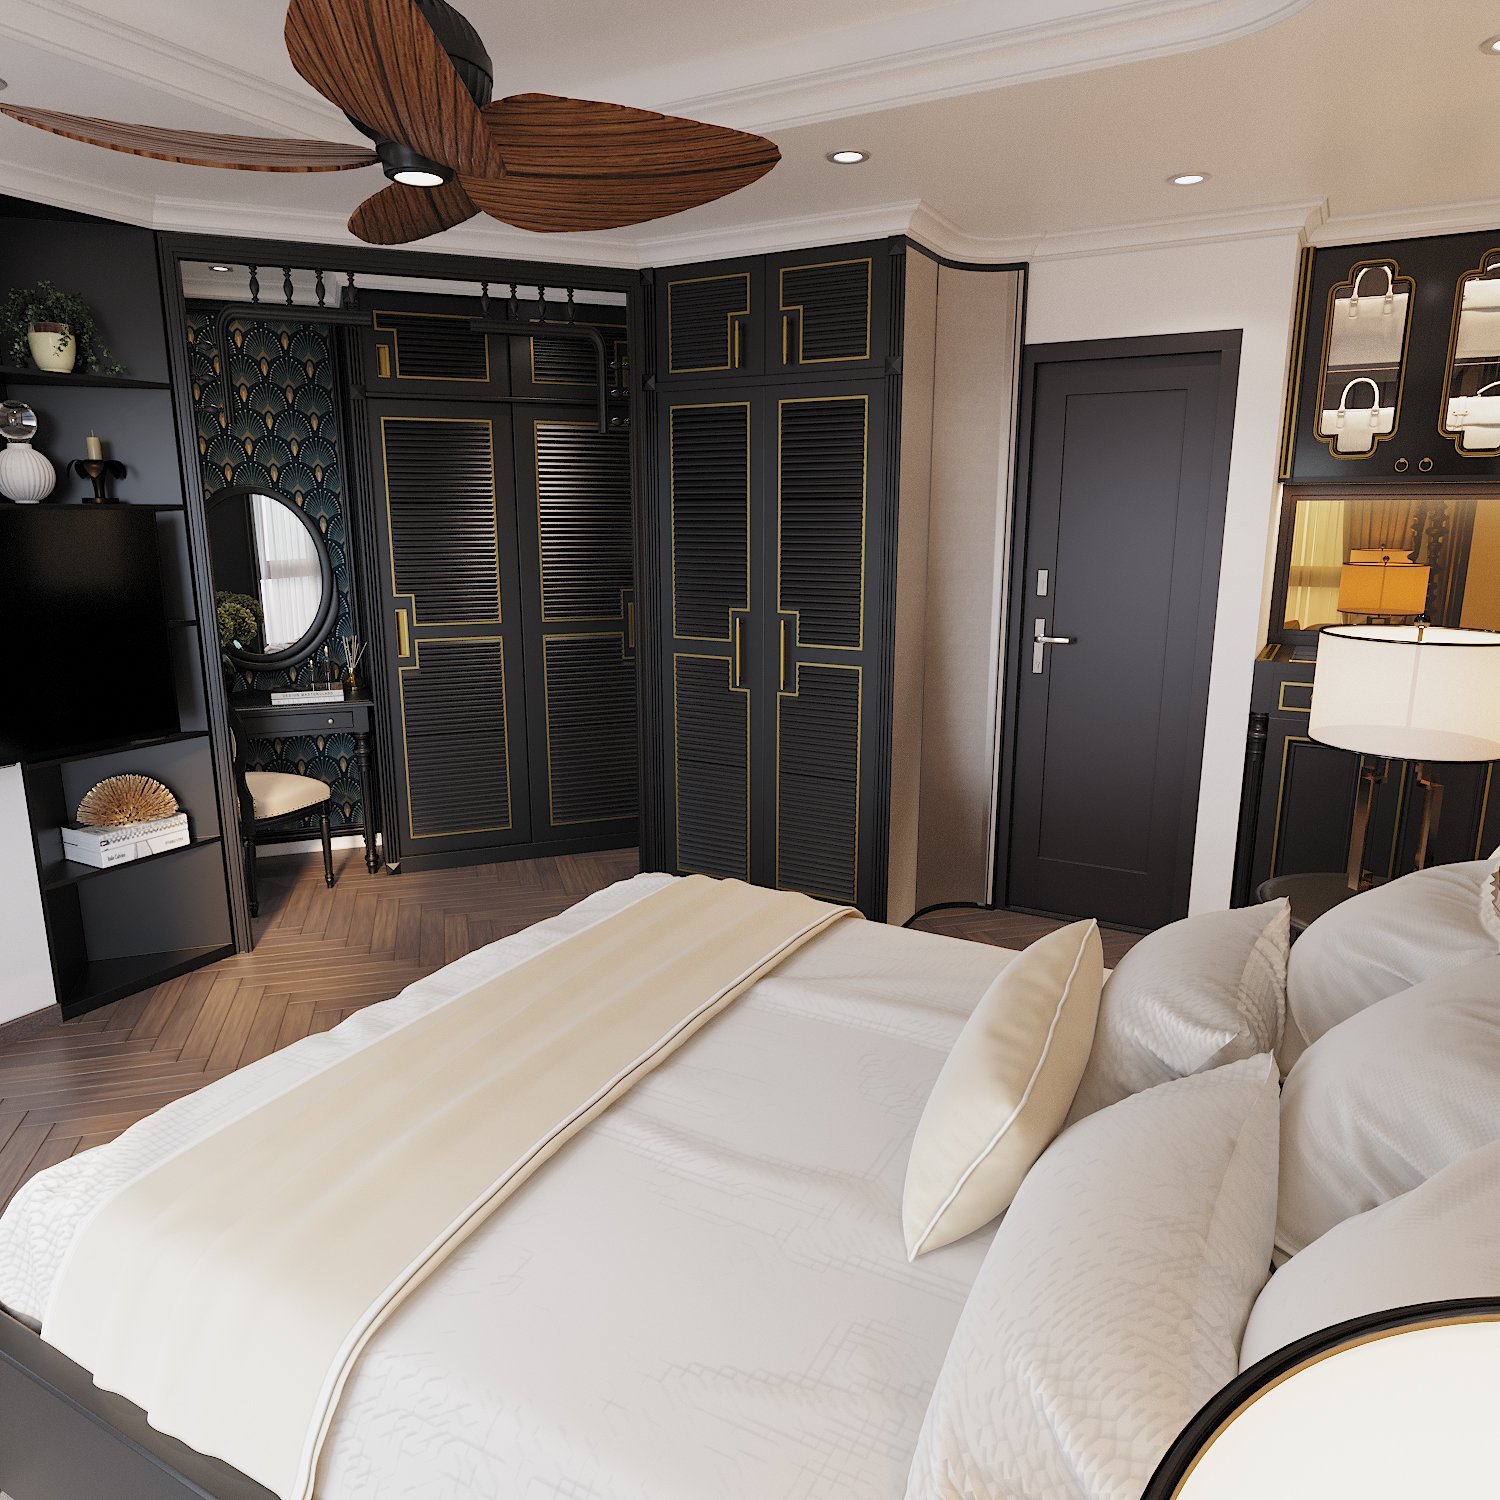 Tủ quần áo màu đen với các đường kẻ màu vàng đồng nổi bật giúp gia tăng chiều sâu cho không gian ngủ nghỉ.